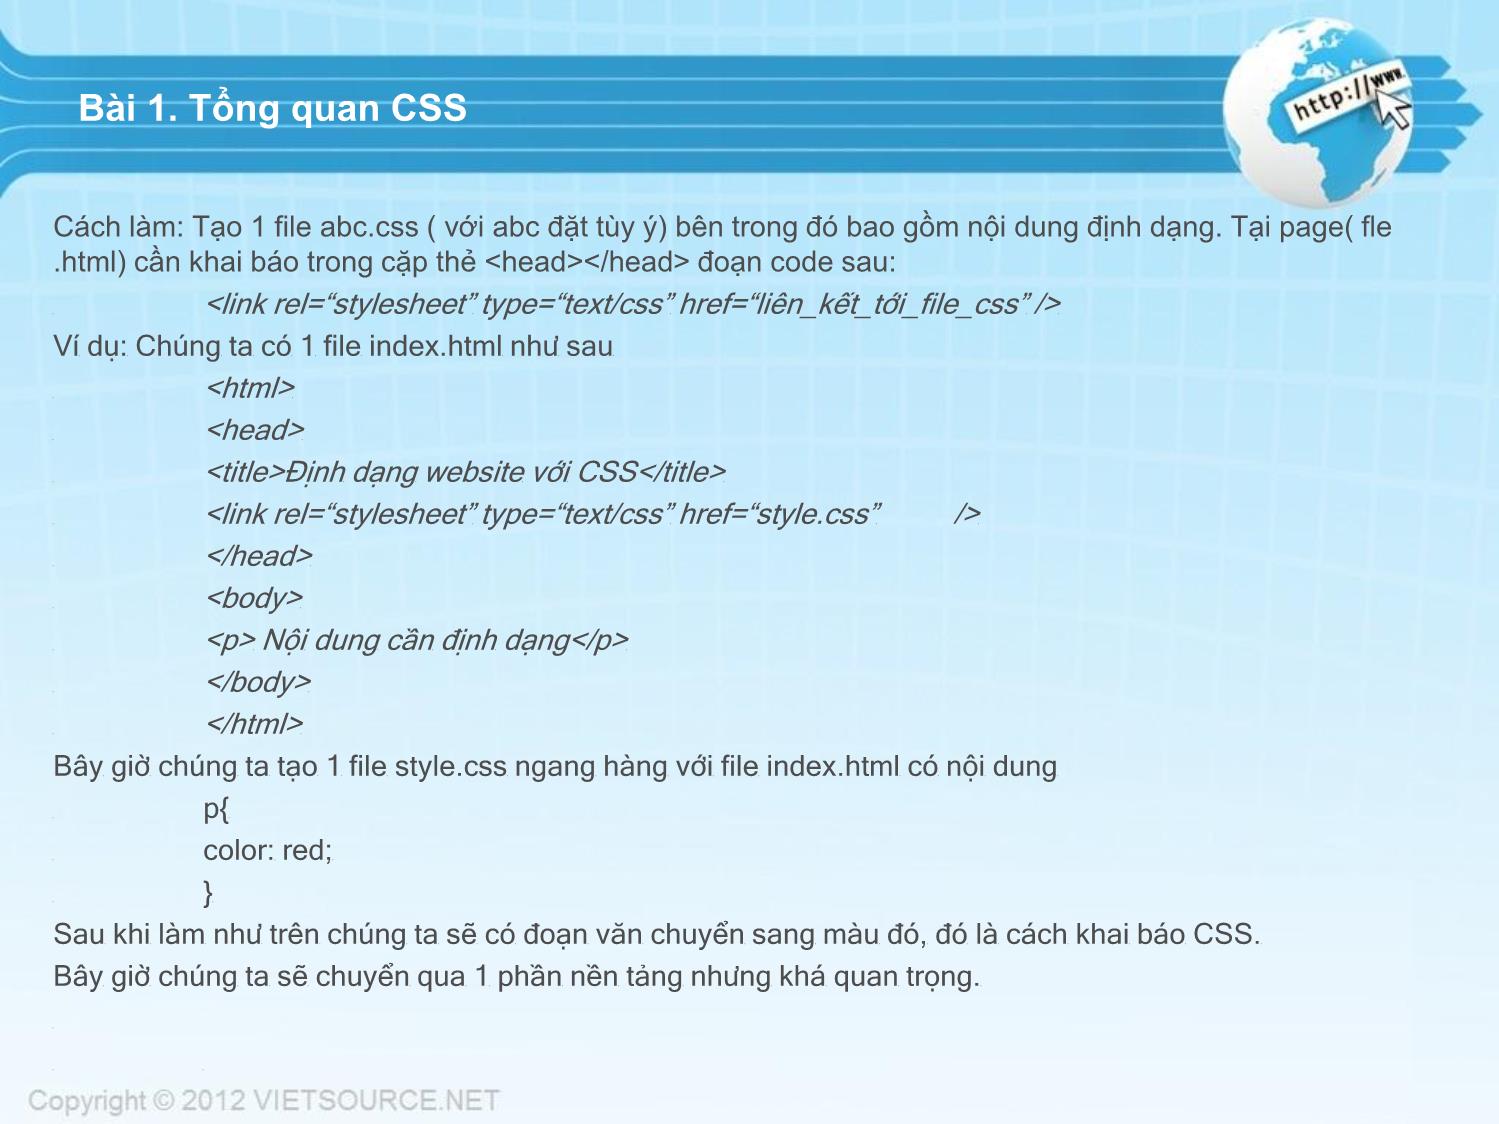 Bài giảng CSS - Bài 1: Tổng quan CSS trang 2